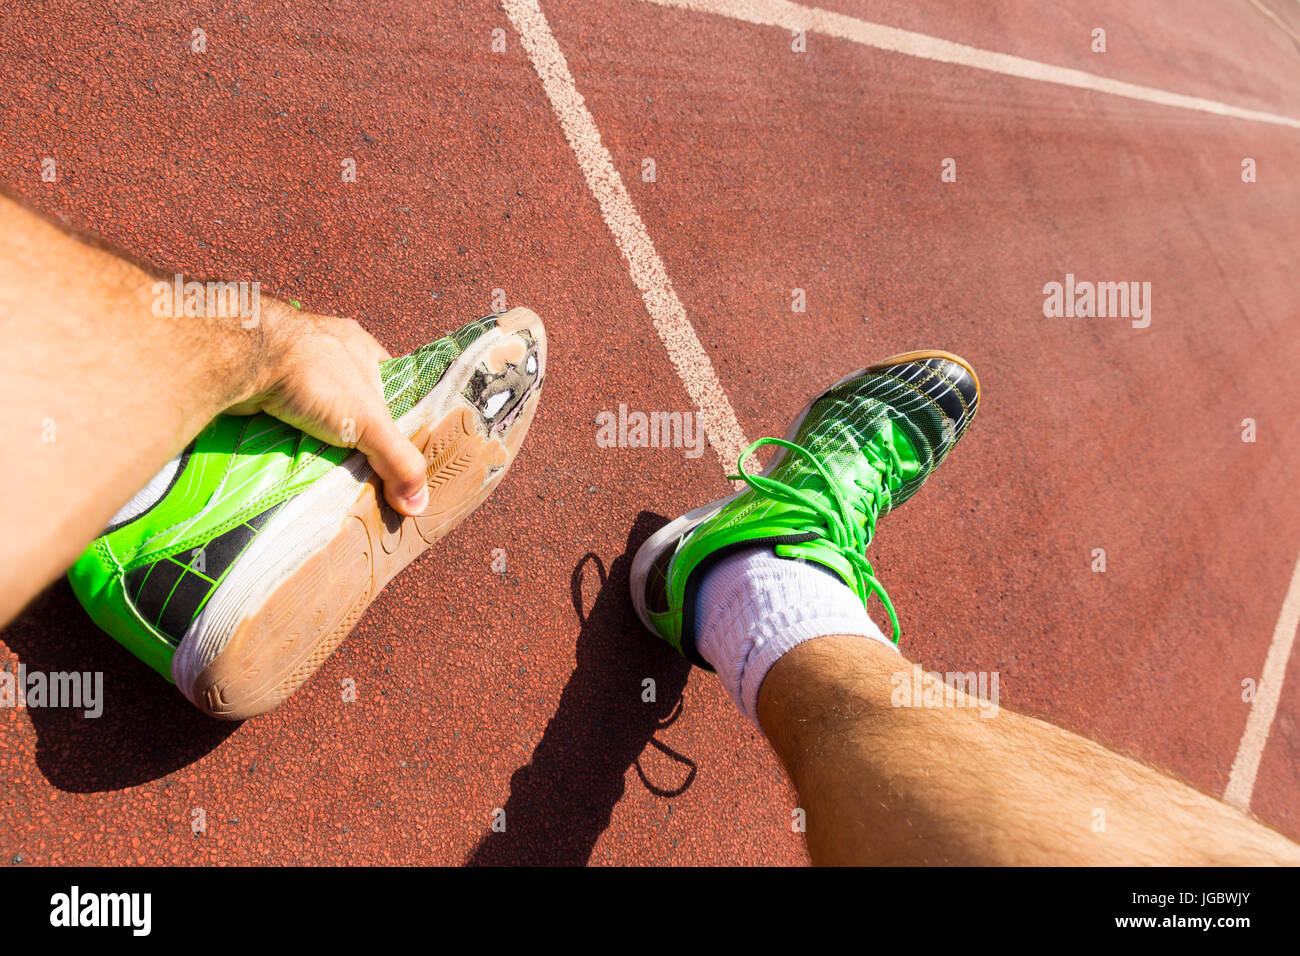 Athlet erschöpft auf einer Laufstrecke gebrochene grüne Laufschuhe mit  großen Löchern in der Sohle tragen Stockfotografie - Alamy